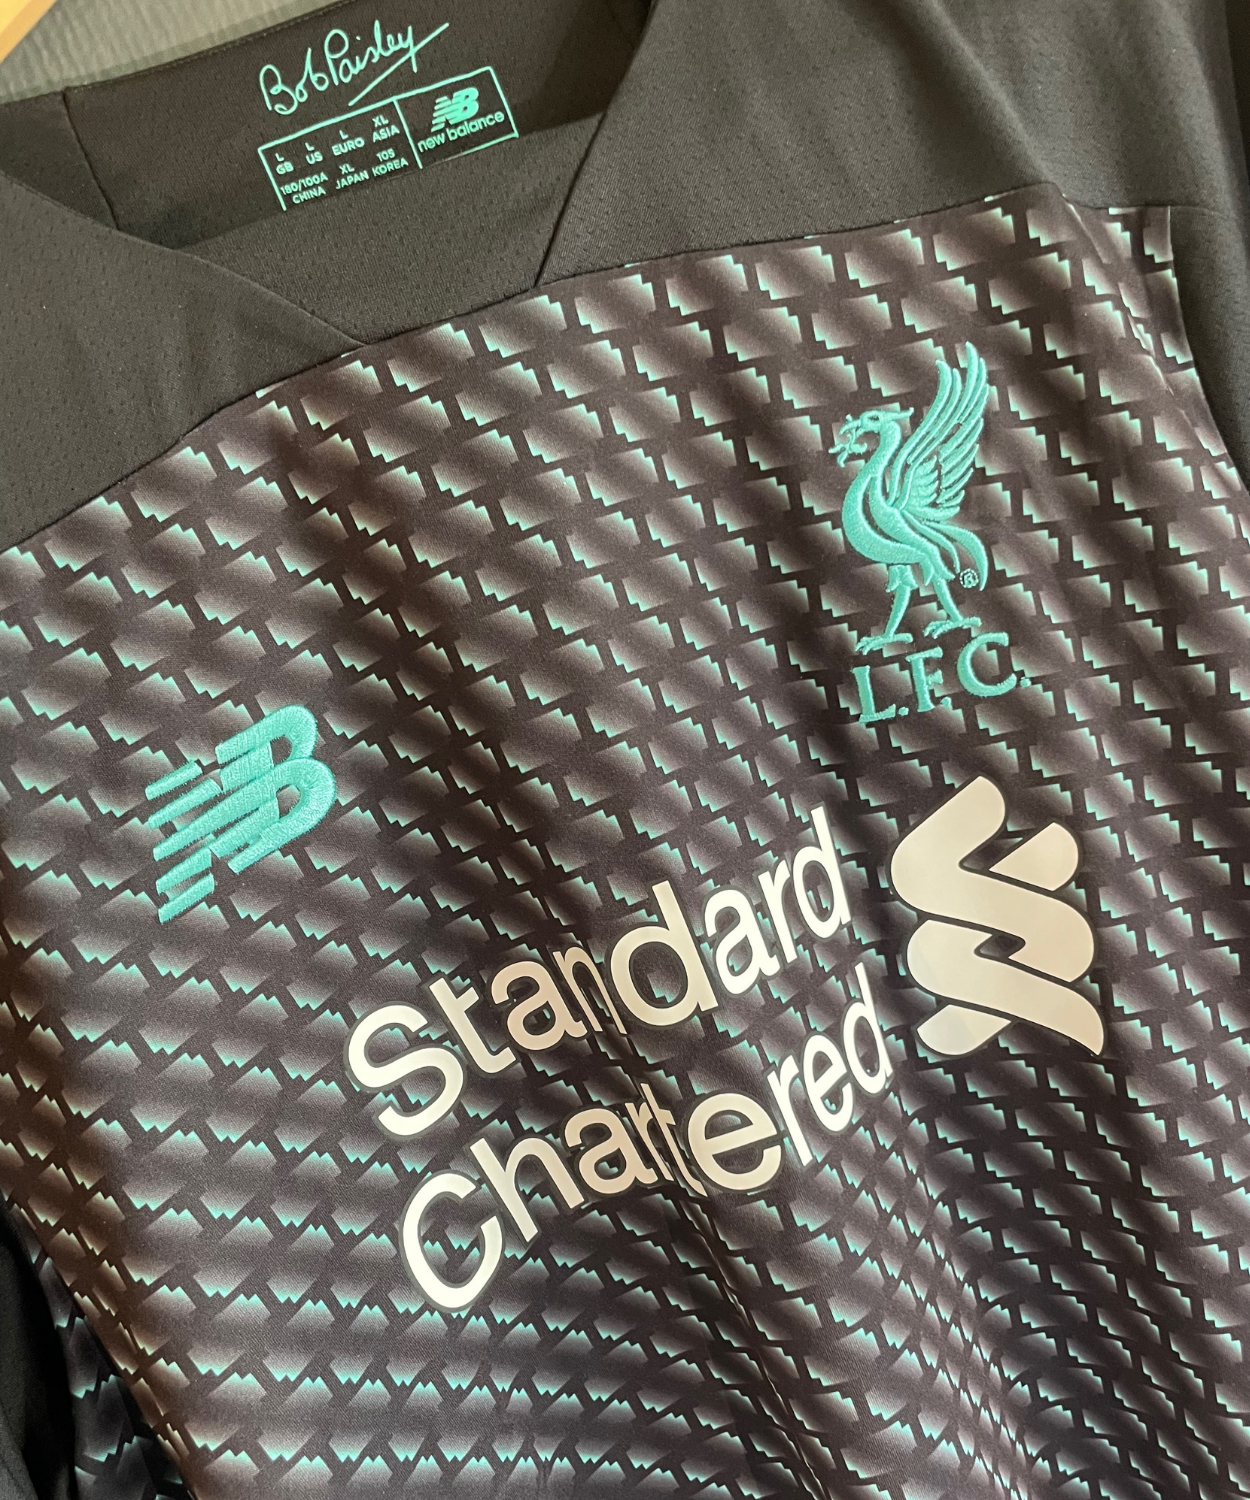 Liverpool FC 2019/20 Wijnaldum Third Kit (L)